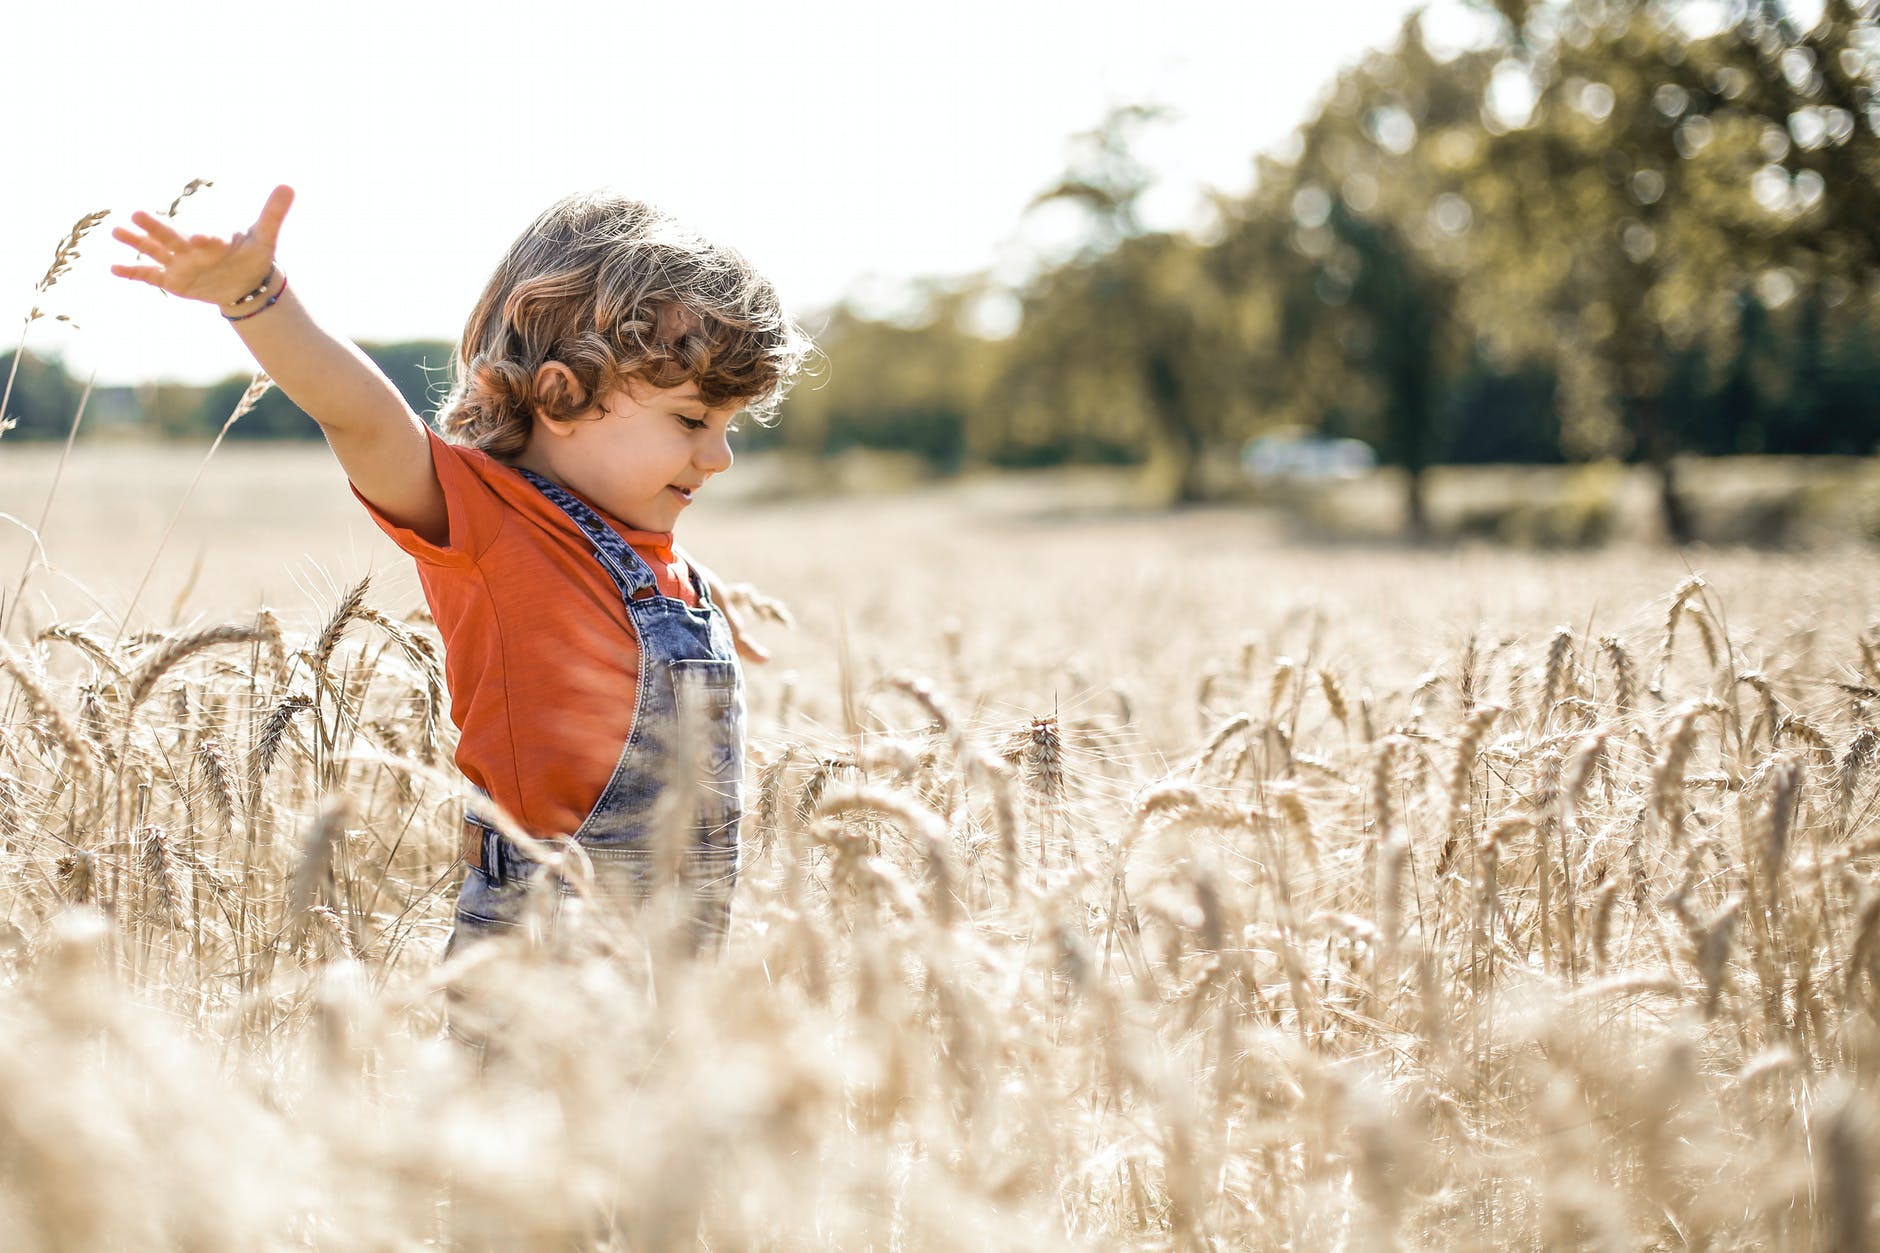 little boy in wheat field